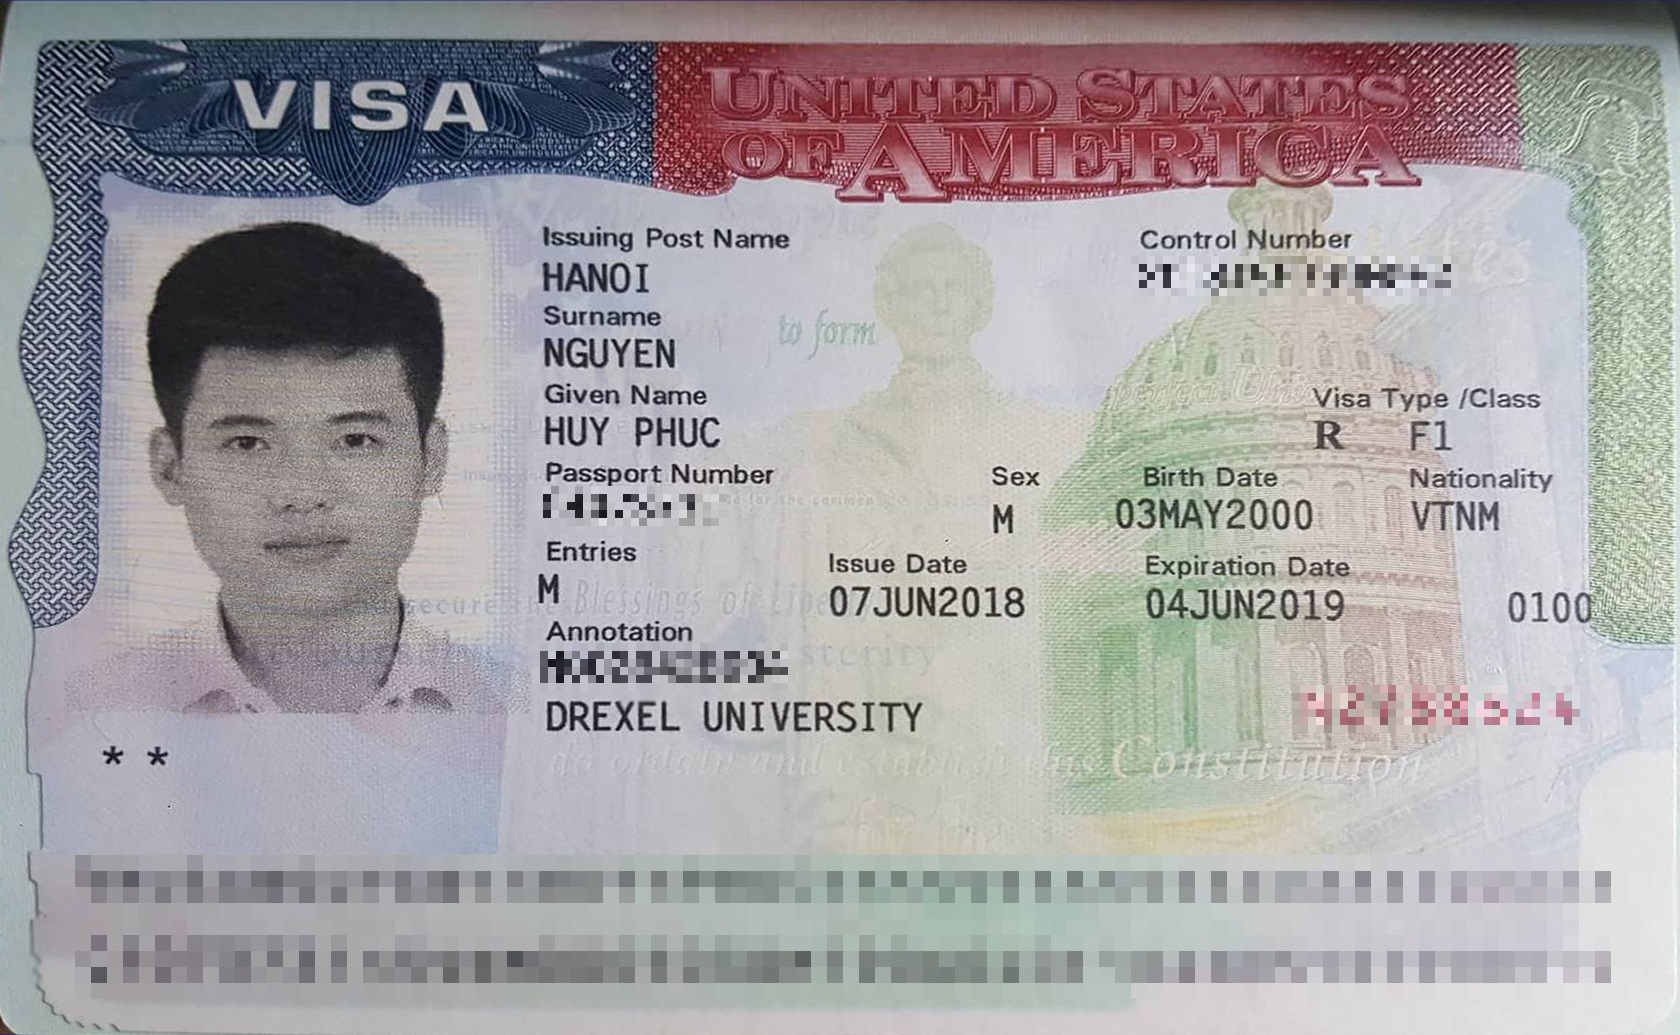 Chúc mừng bạn Nguyễn Huy Phúc đã đậu visa du học Mỹ